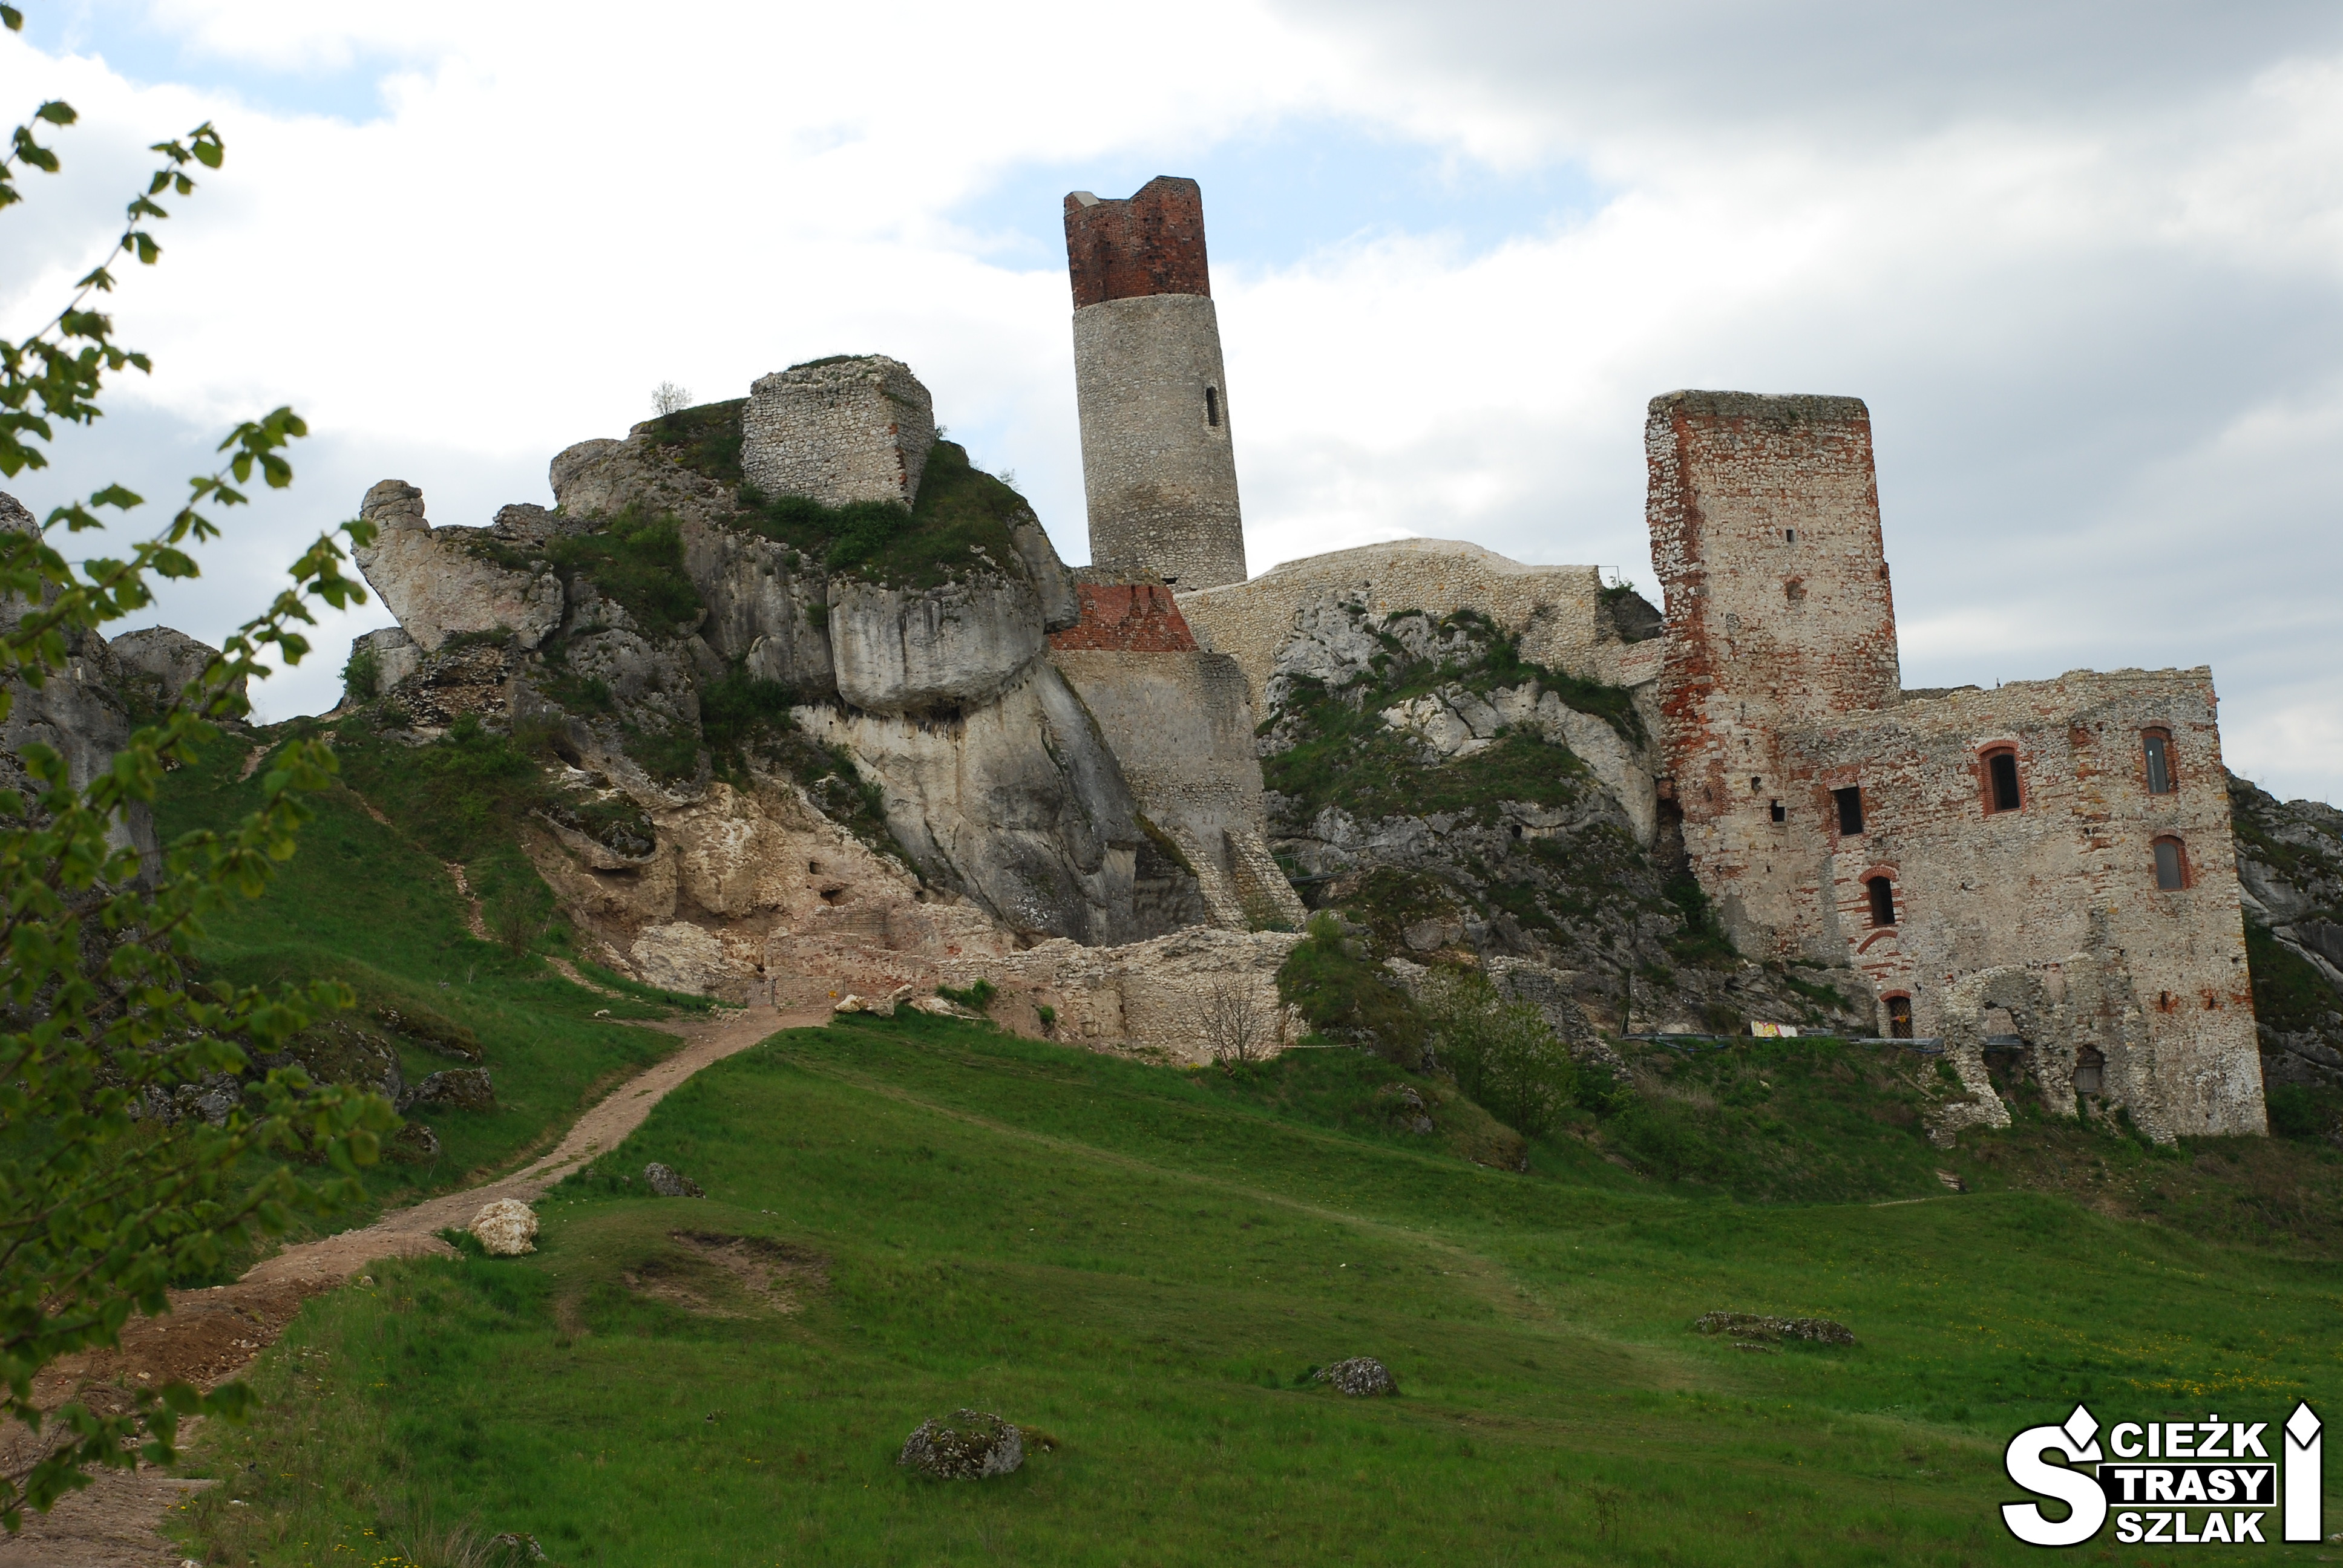 Wydeptana ścieżka na zielonym wzgórzu, prowadząca do ruin zamku w Olsztynie na skale wapiennej i fragmentów muru obronnego